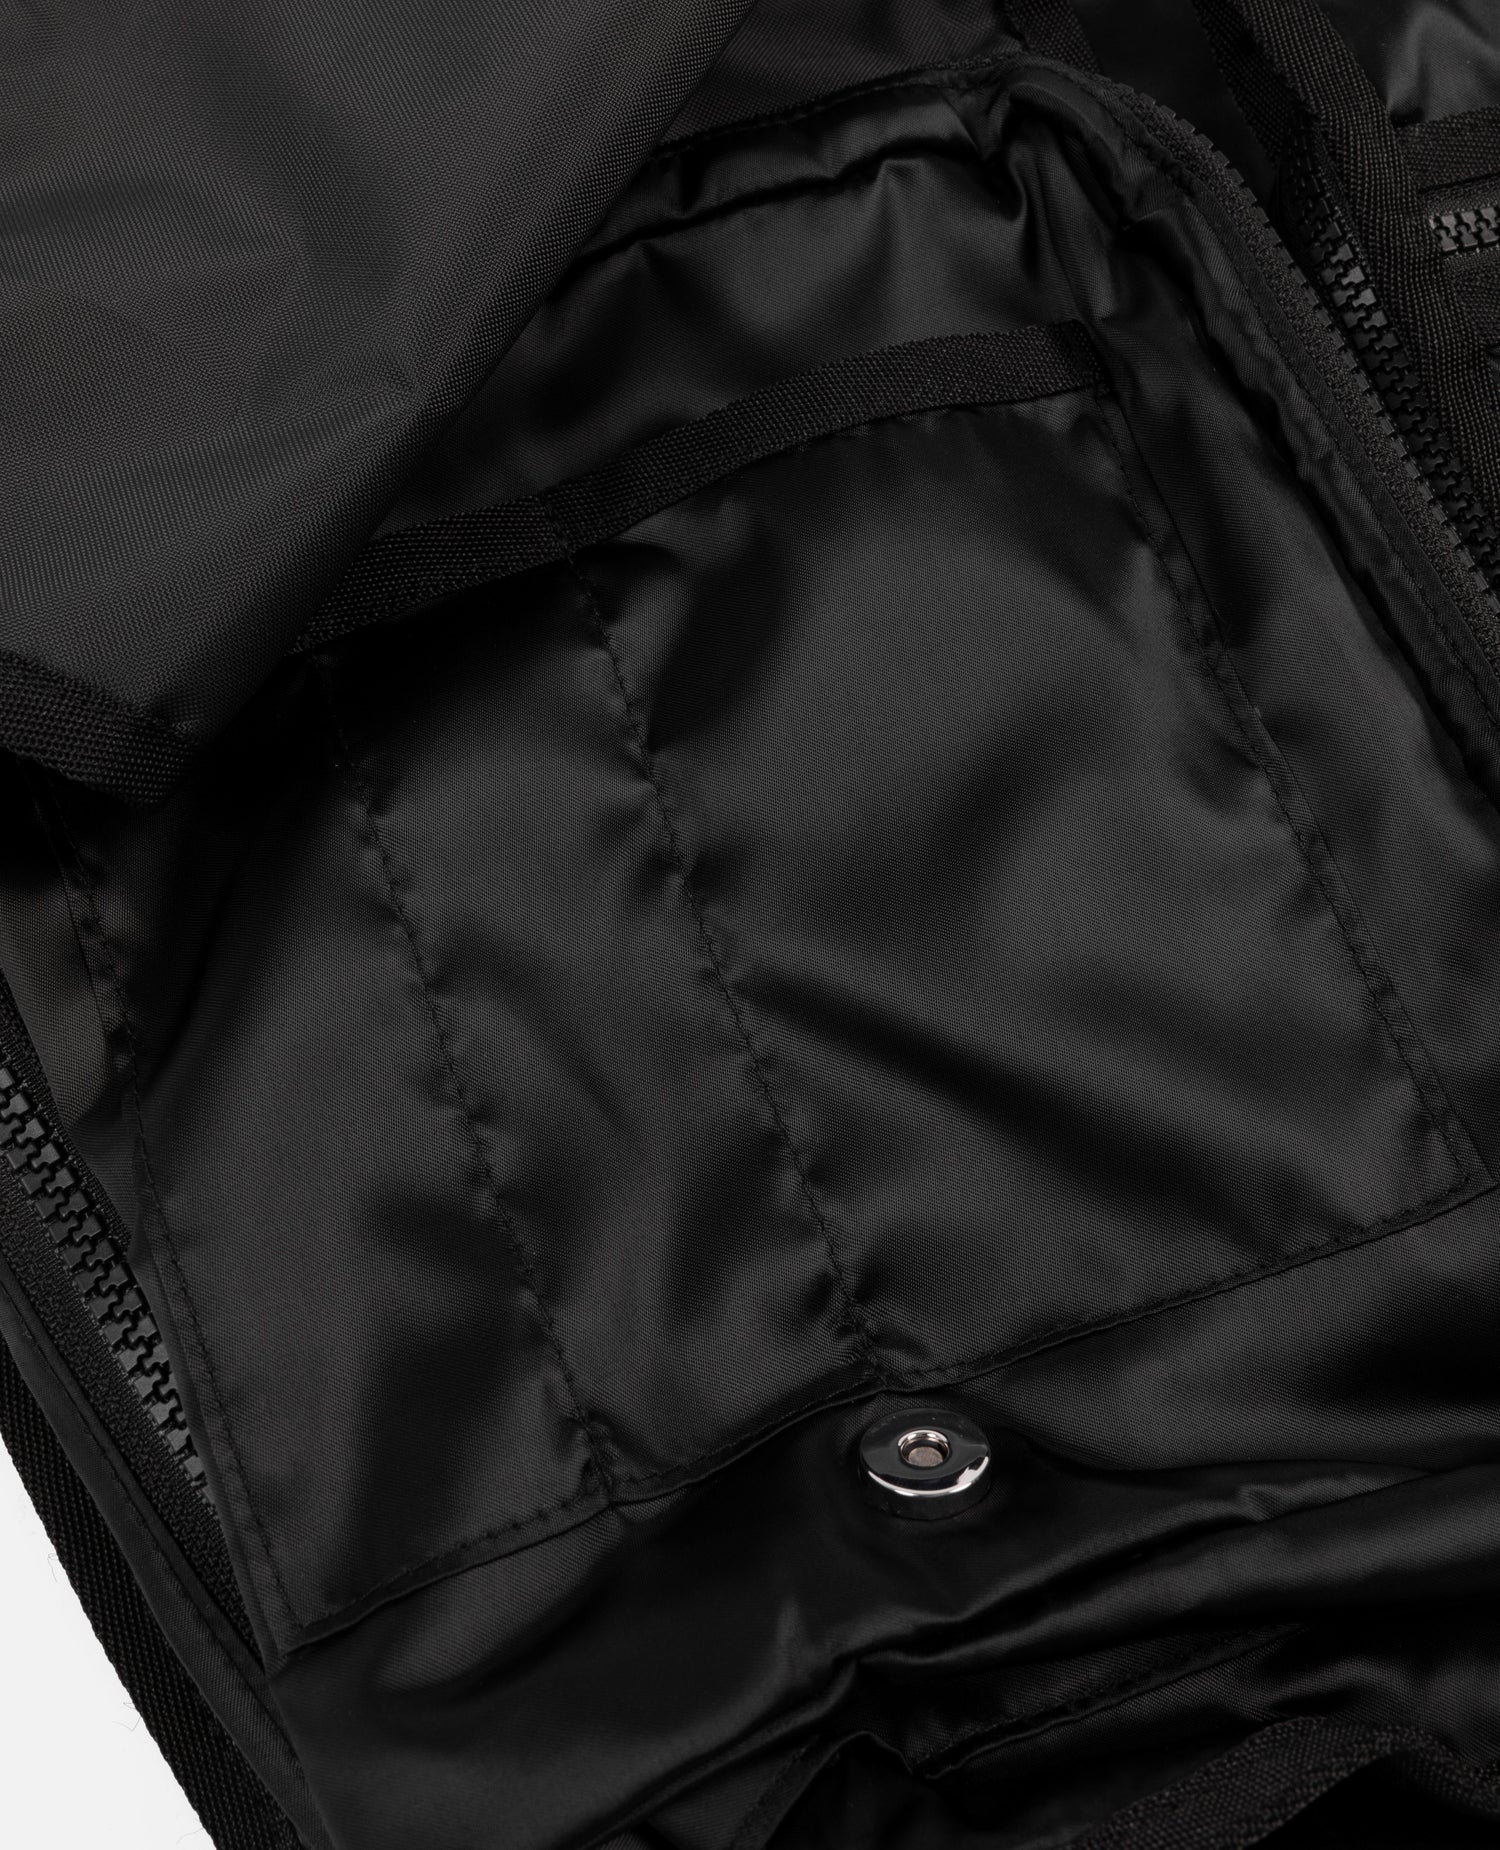 Patta Tactical Shoulder Bag (Black)